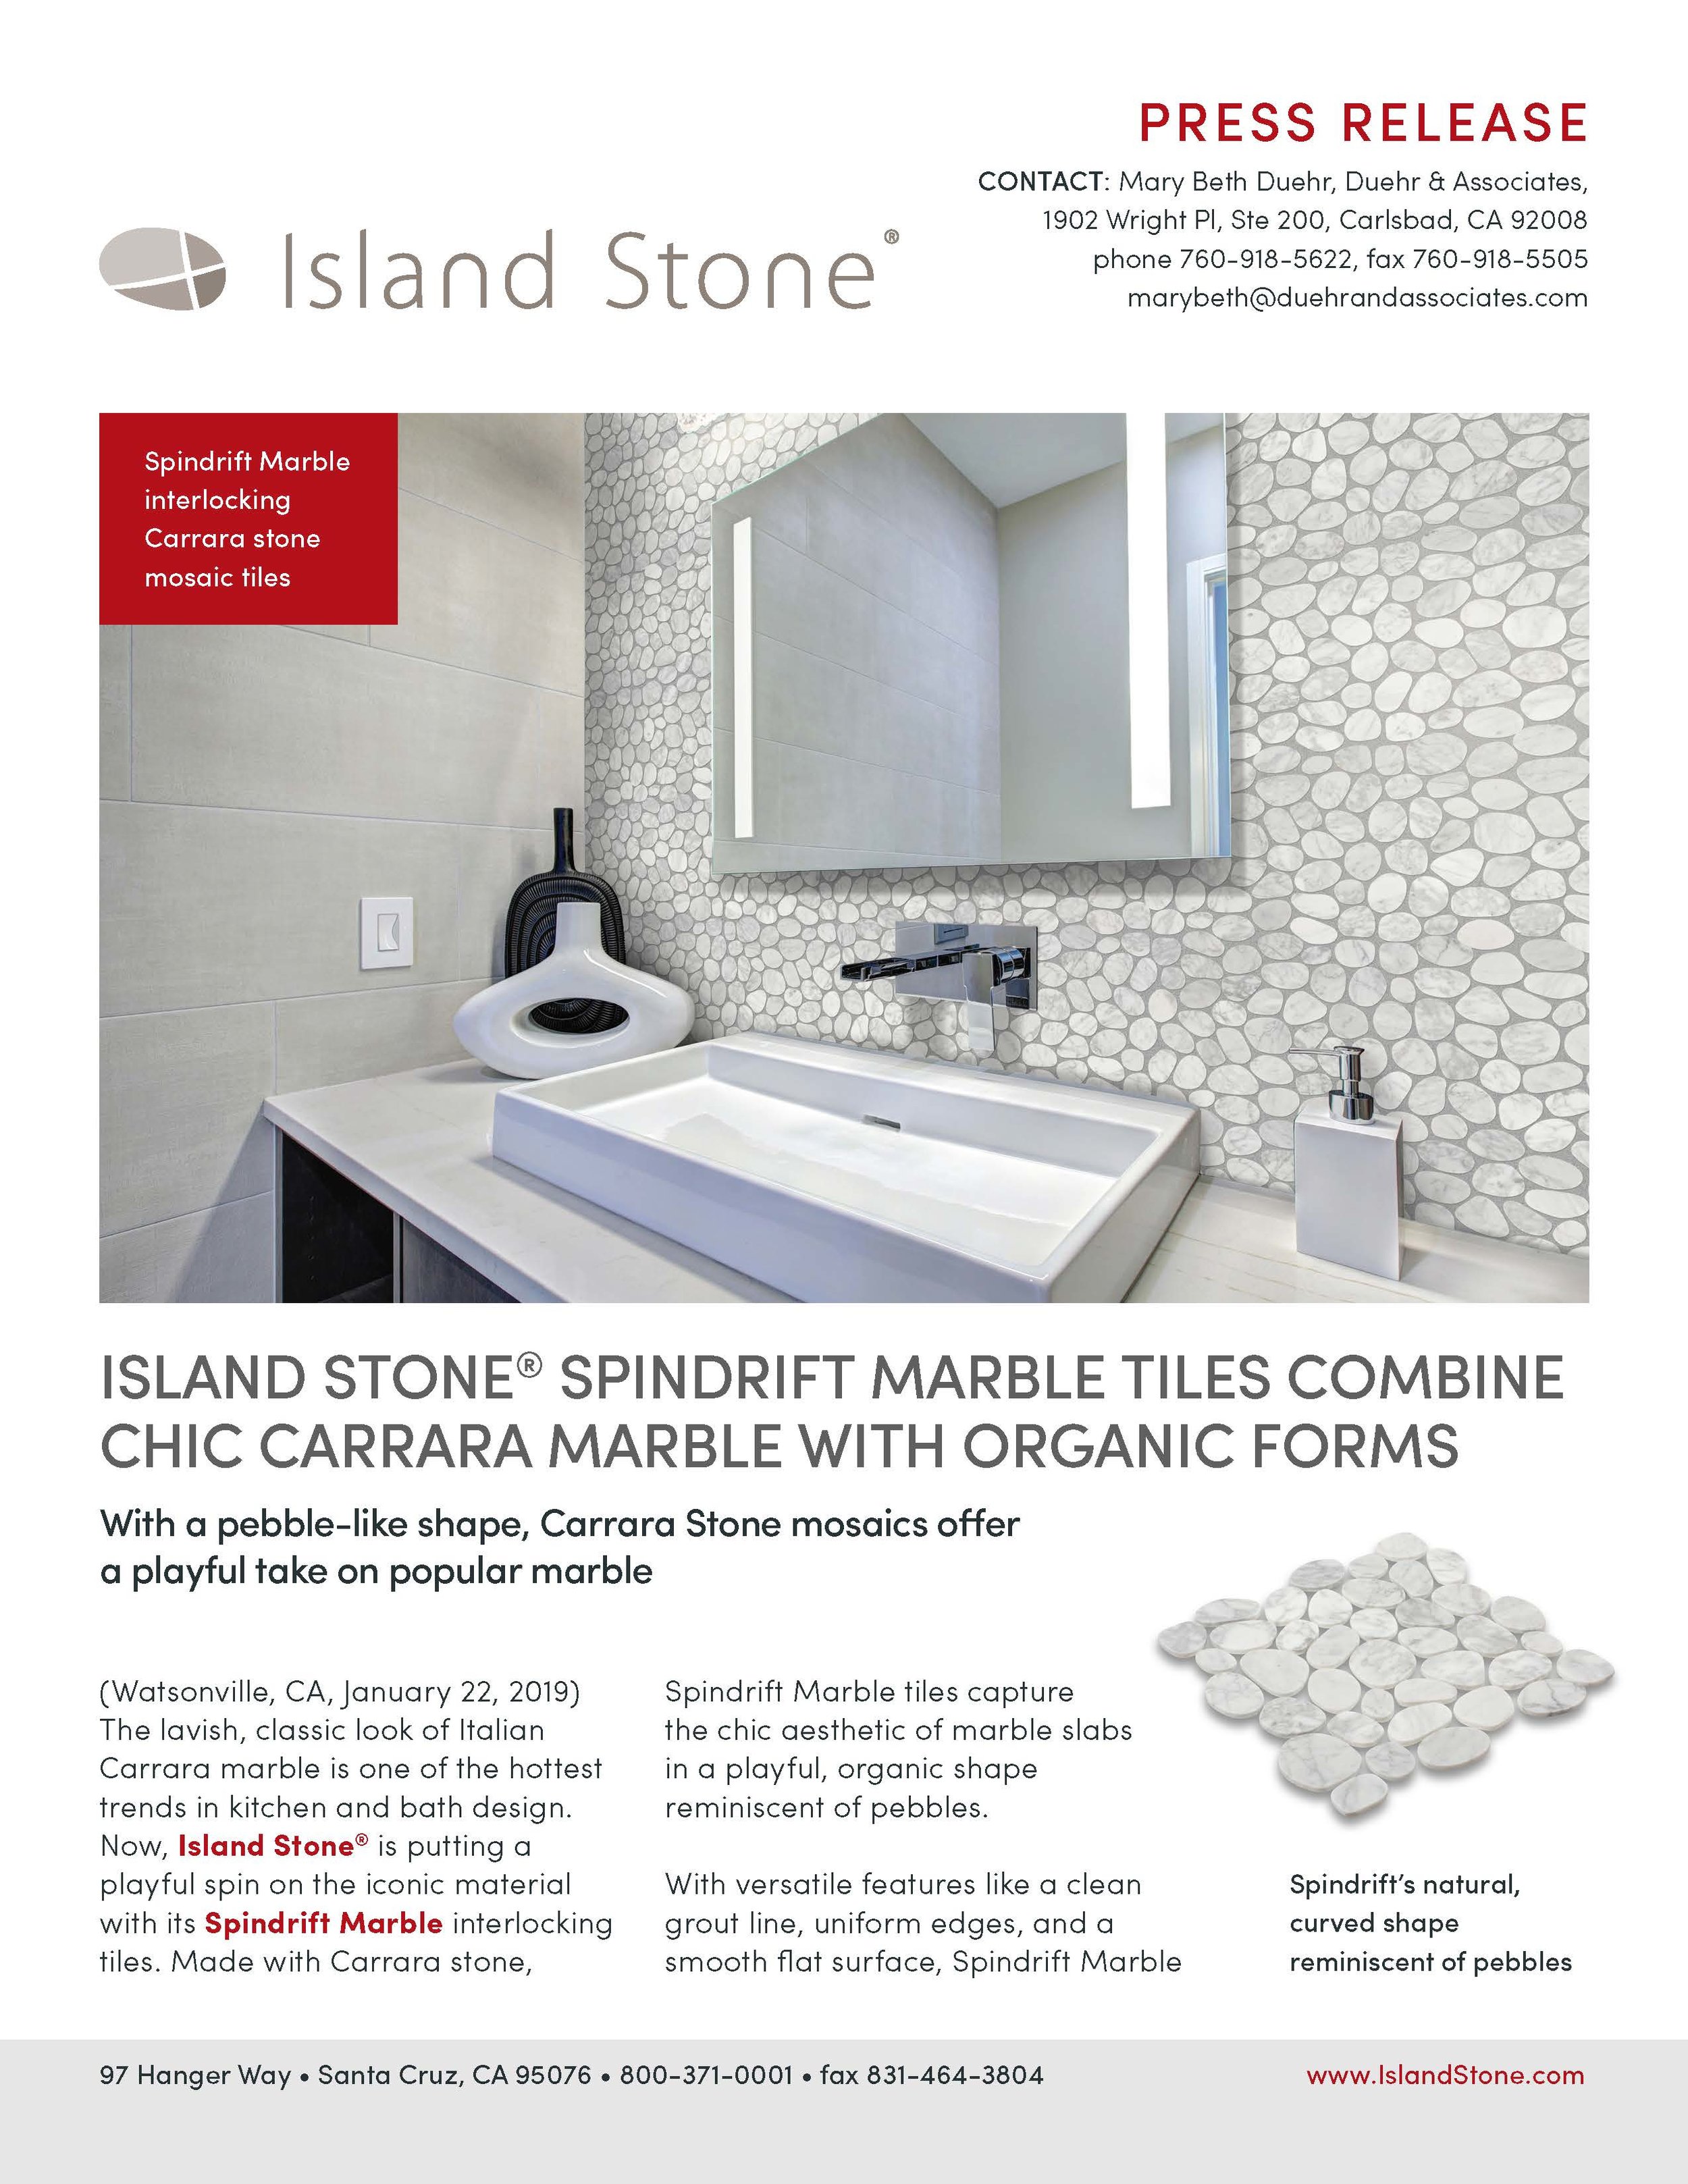 Island Stone Press Release